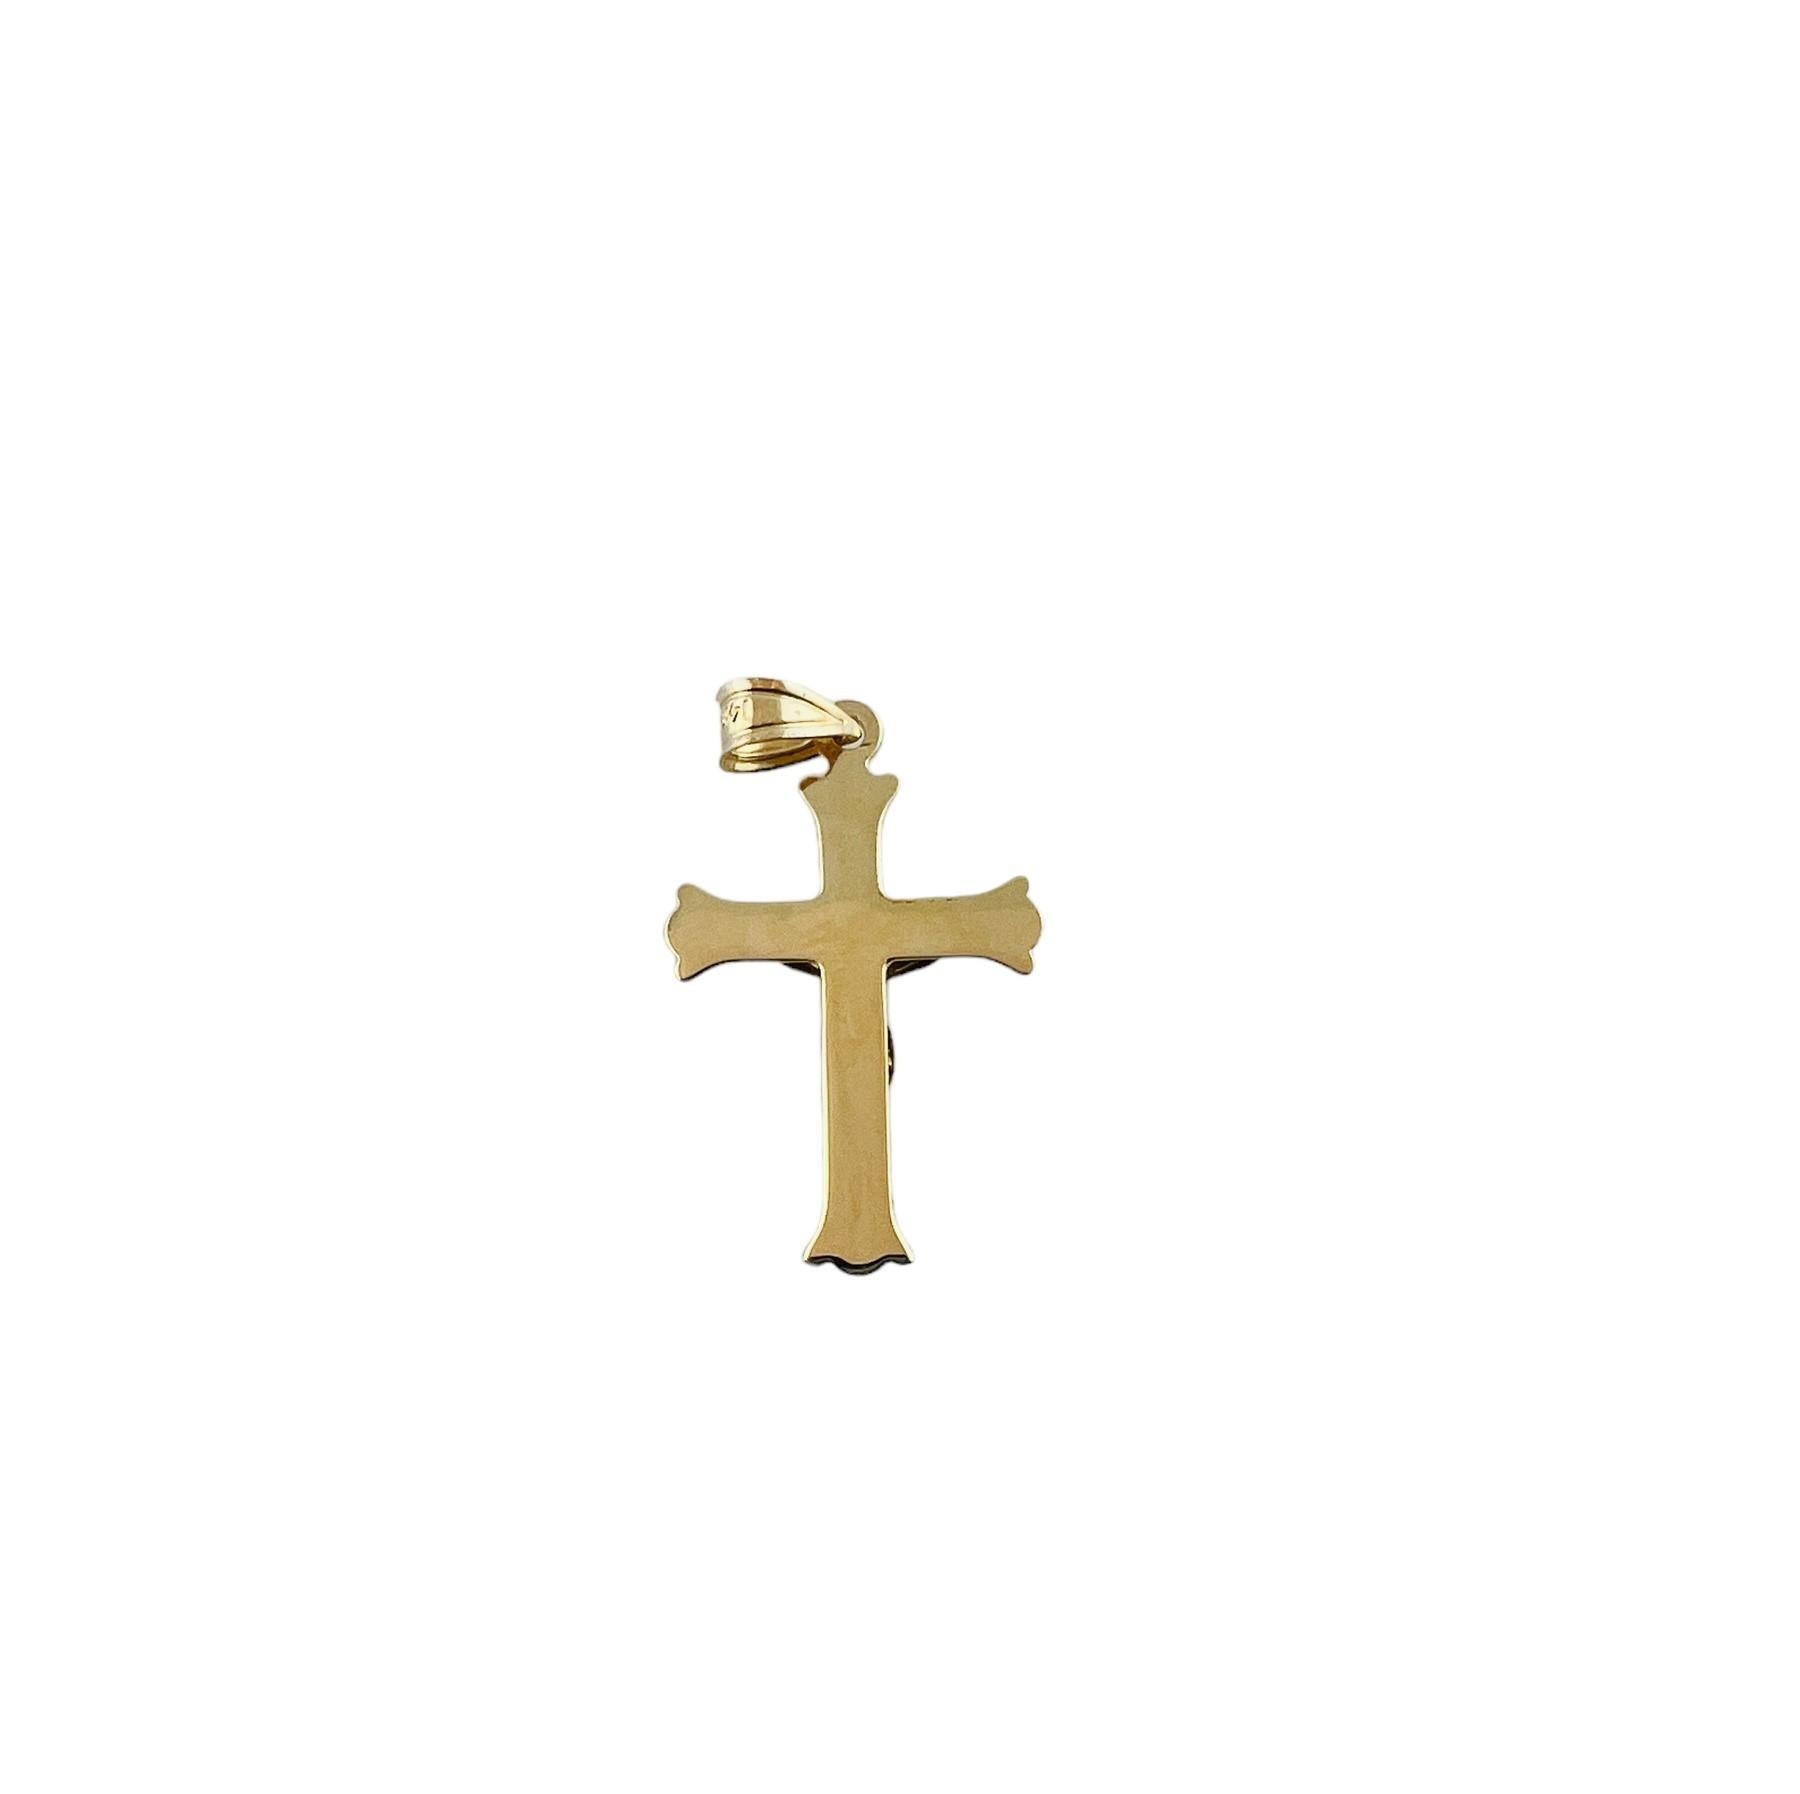 Pendentif crucifix en or bicolore 14K

Ce crucifix est composé d'une croix en or jaune 14 carats et de Jésus en or blanc 14 carats.

Le pendentif mesure environ 36,1 mm x 19,0 mm x 3,2 mm.

1,0 gramme / 0,6 dwt

Estampillé 14K MA

*Ne vient pas avec